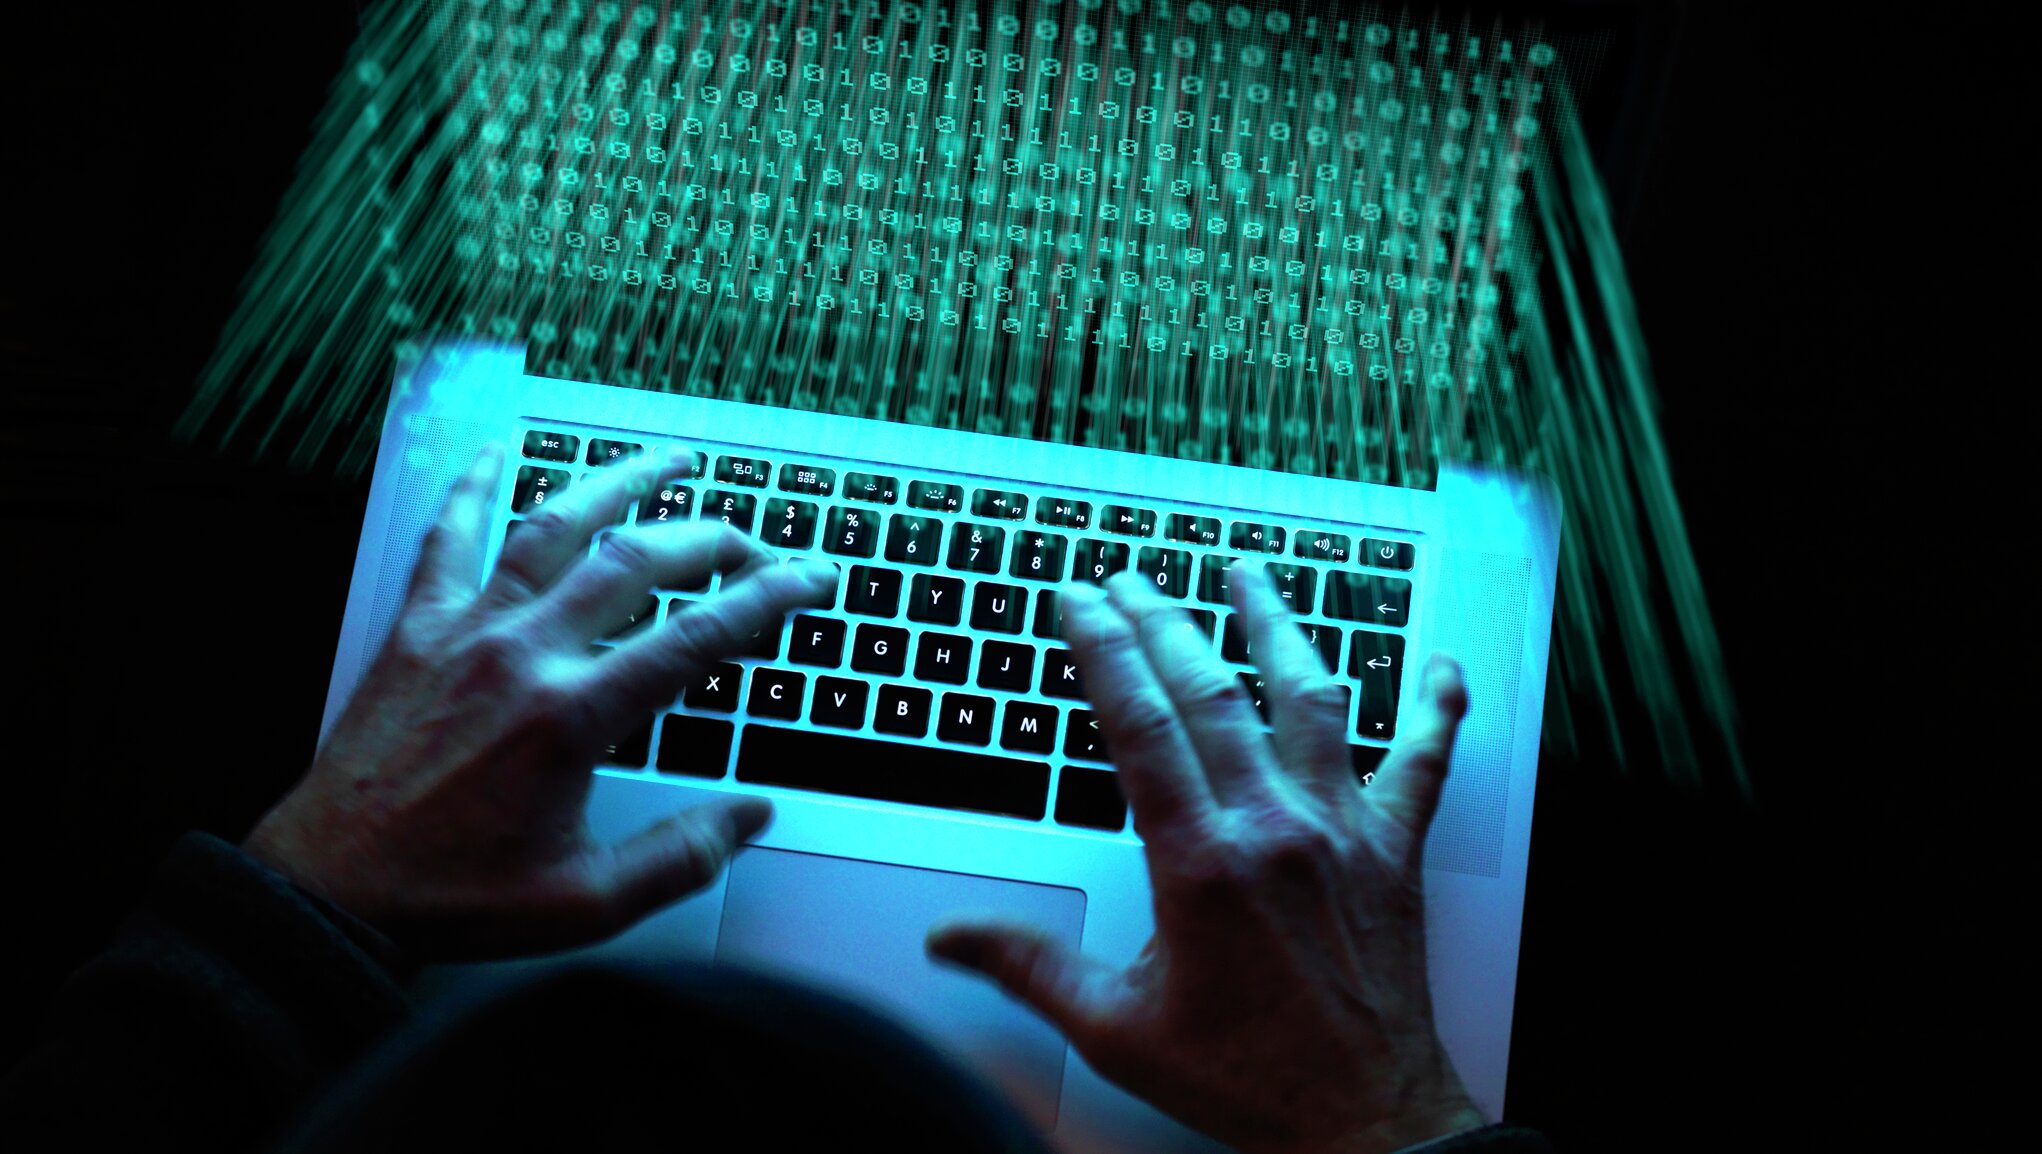 Bestil cyberforsikring hos If Skadeforsikring og få hjælp mod hackere